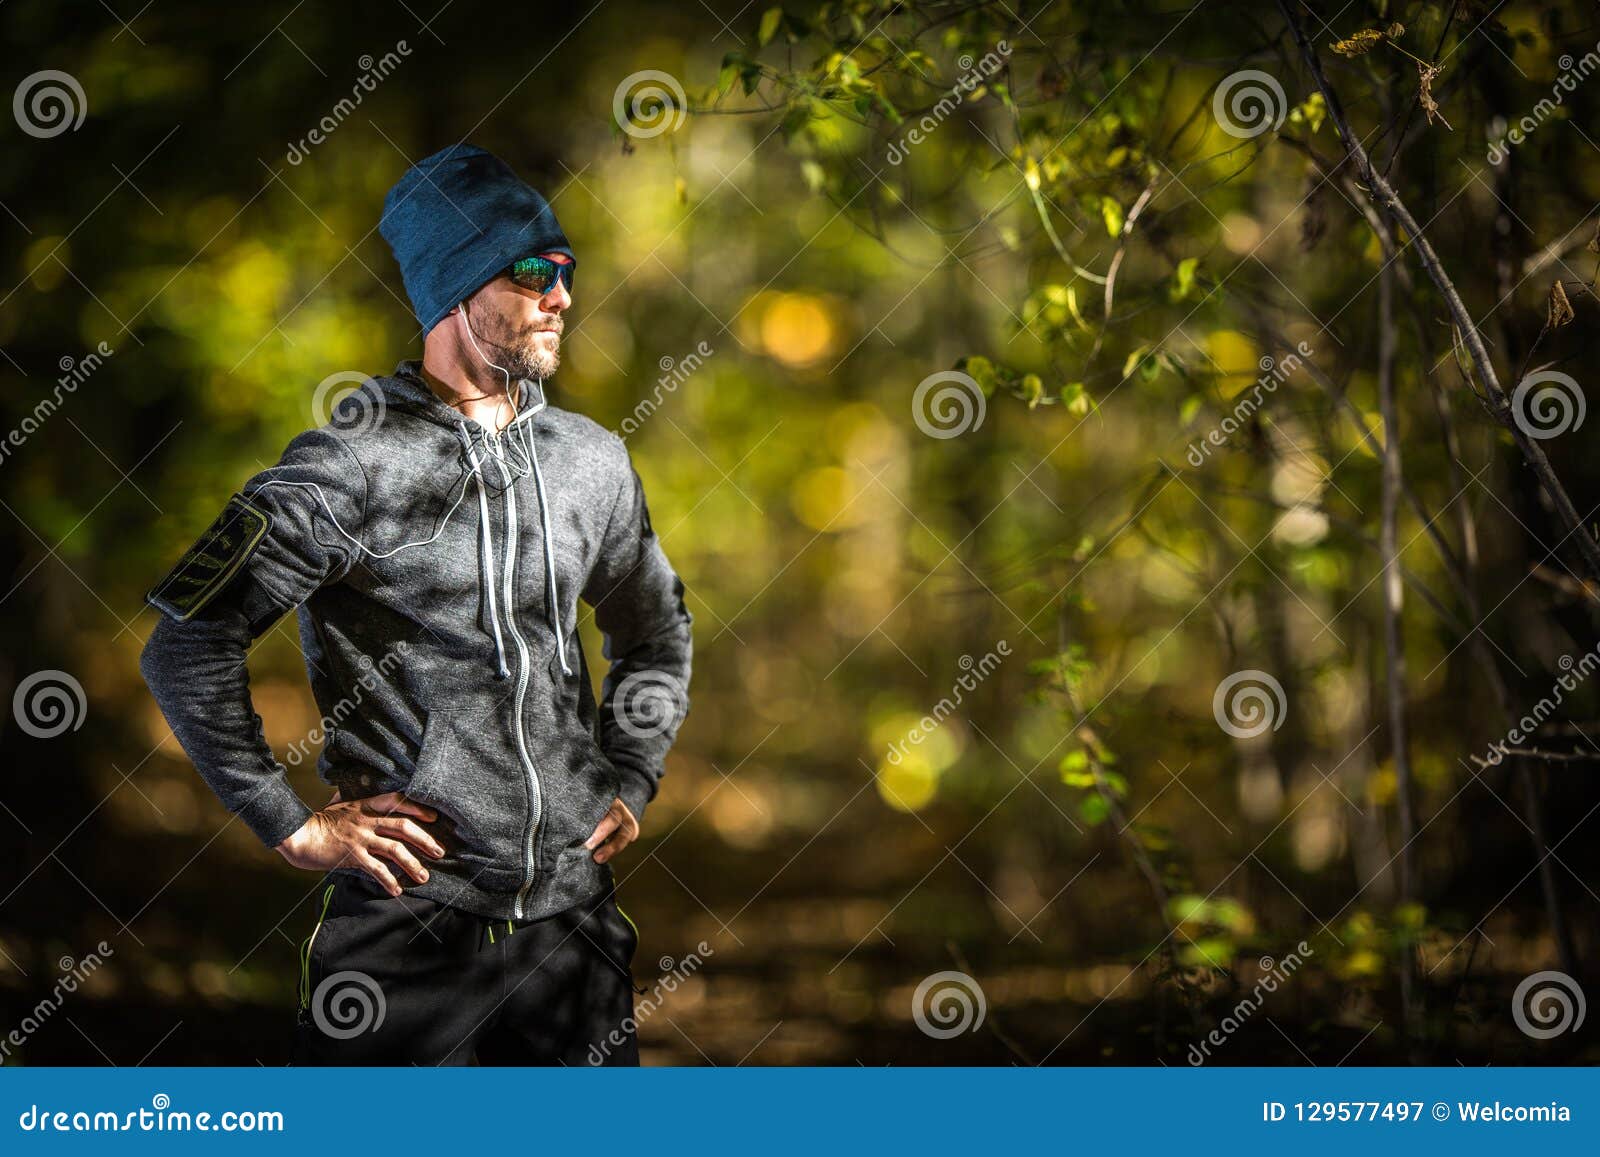 outdoor sportsman runner